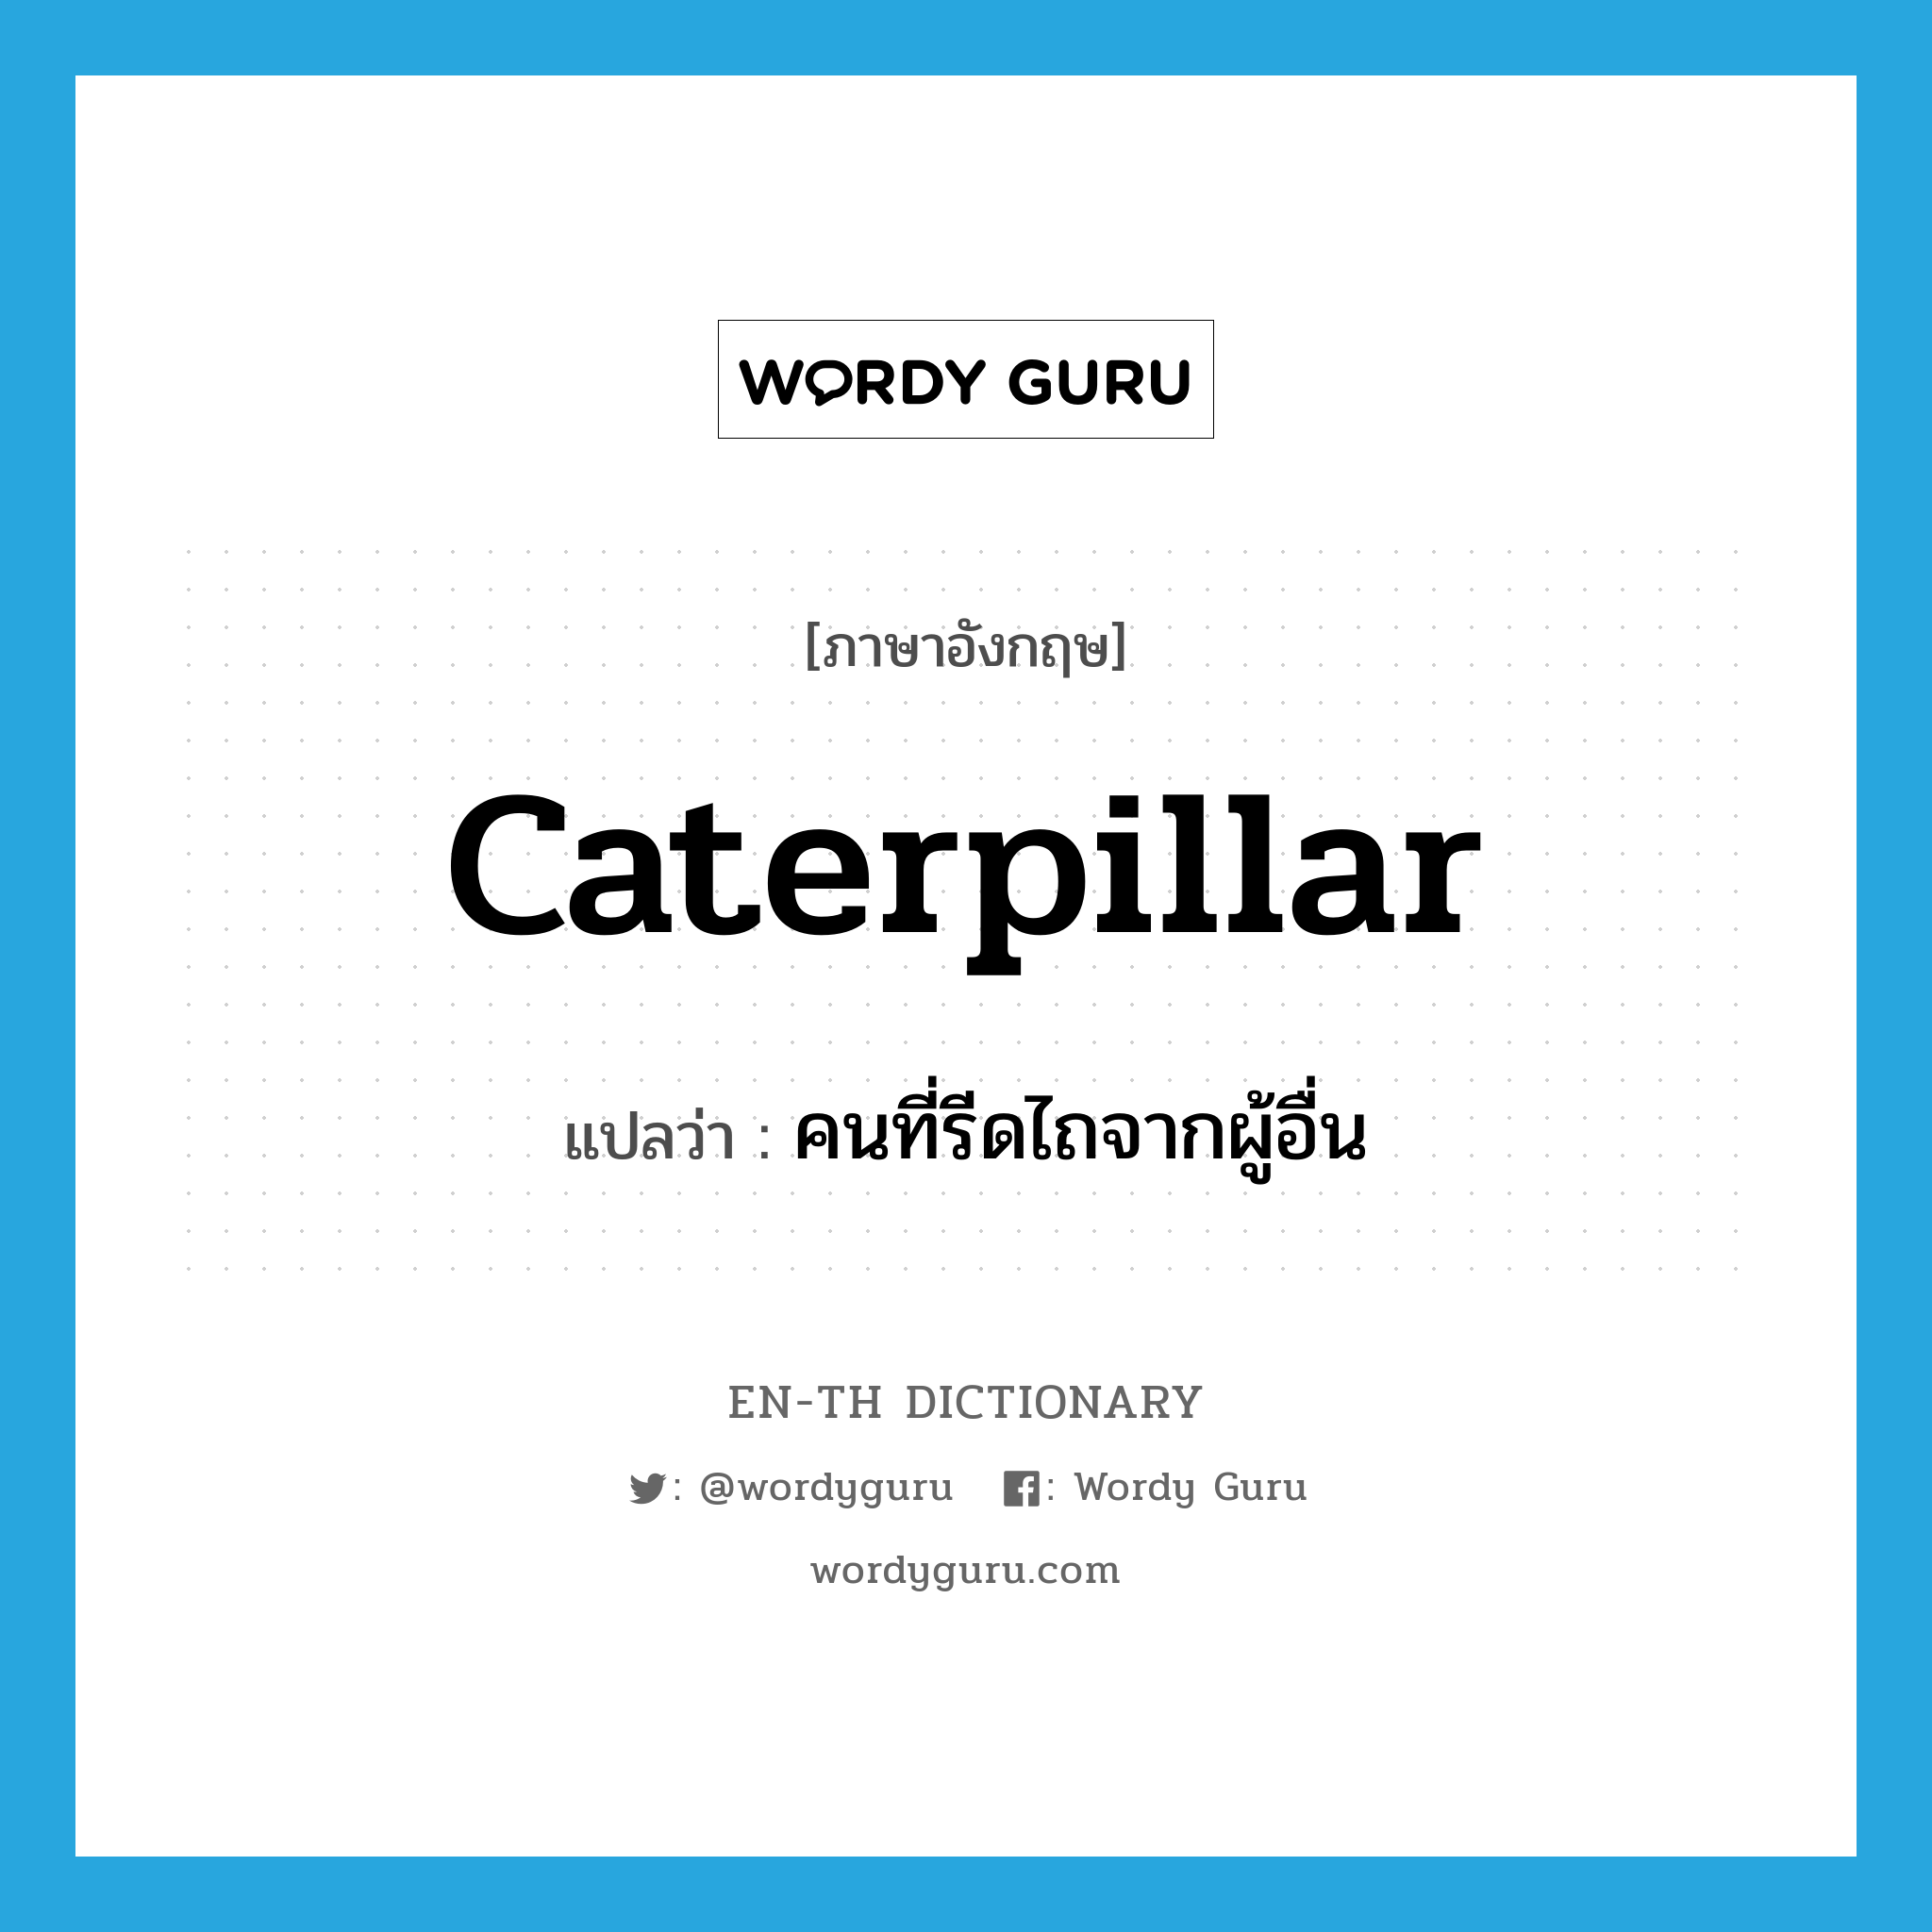 caterpillar แปลว่า?, คำศัพท์ภาษาอังกฤษ caterpillar แปลว่า คนที่รีดไถจากผู้อื่น ประเภท N หมวด N